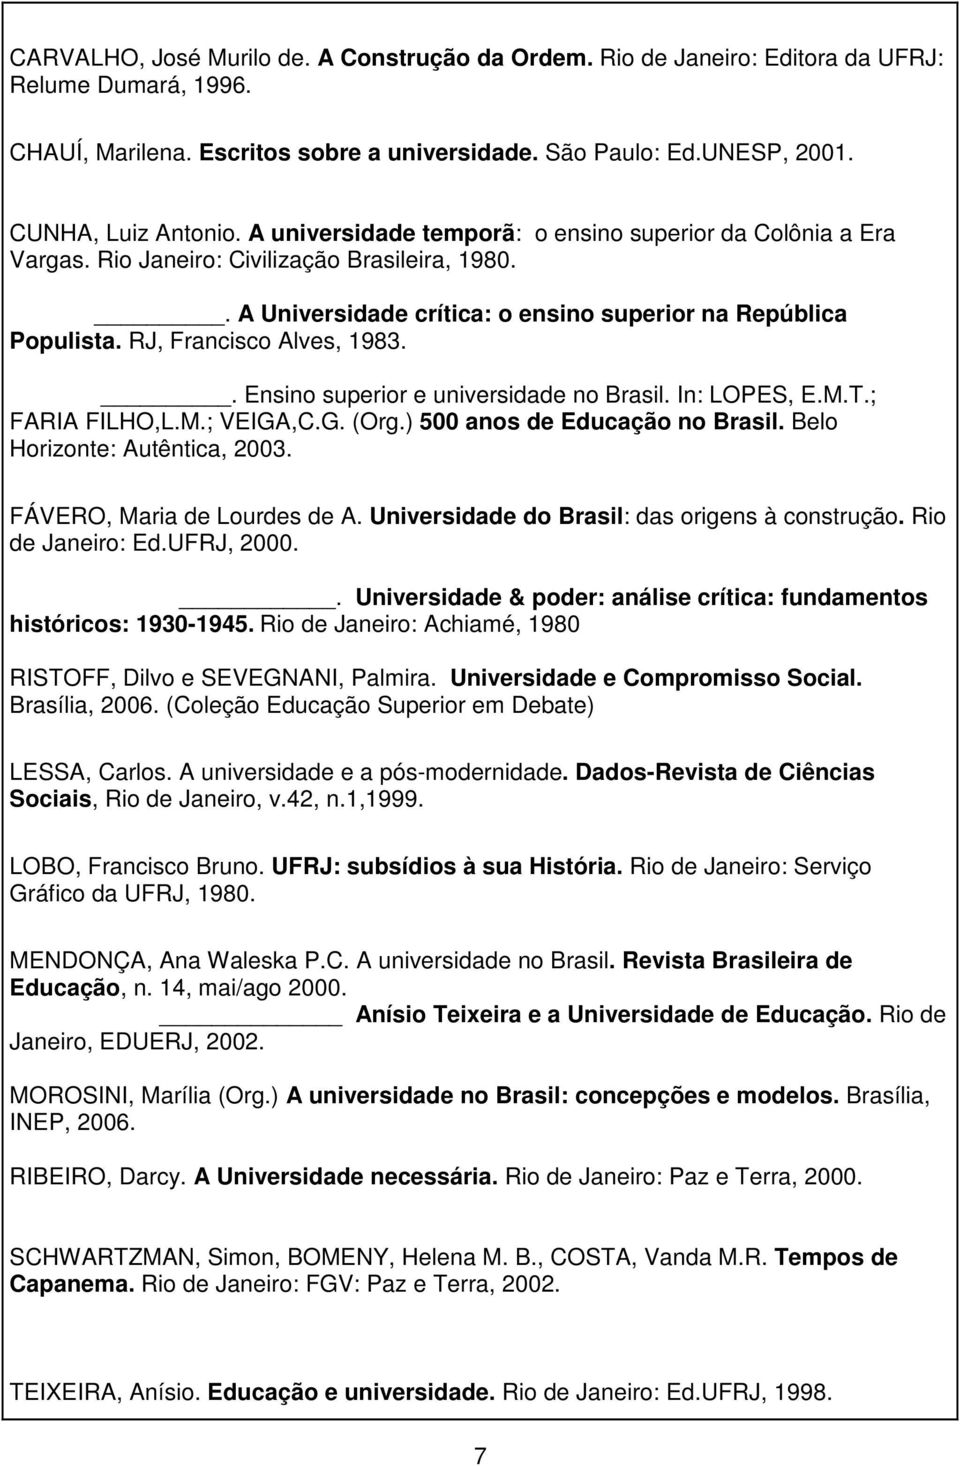 RJ, Francisco Alves, 1983.. Ensino superior e universidade no Brasil. In: LOPES, E.M.T.; FARIA FILHO,L.M.; VEIGA,C.G. (Org.) 500 anos de Educação no Brasil. Belo Horizonte: Autêntica, 2003.